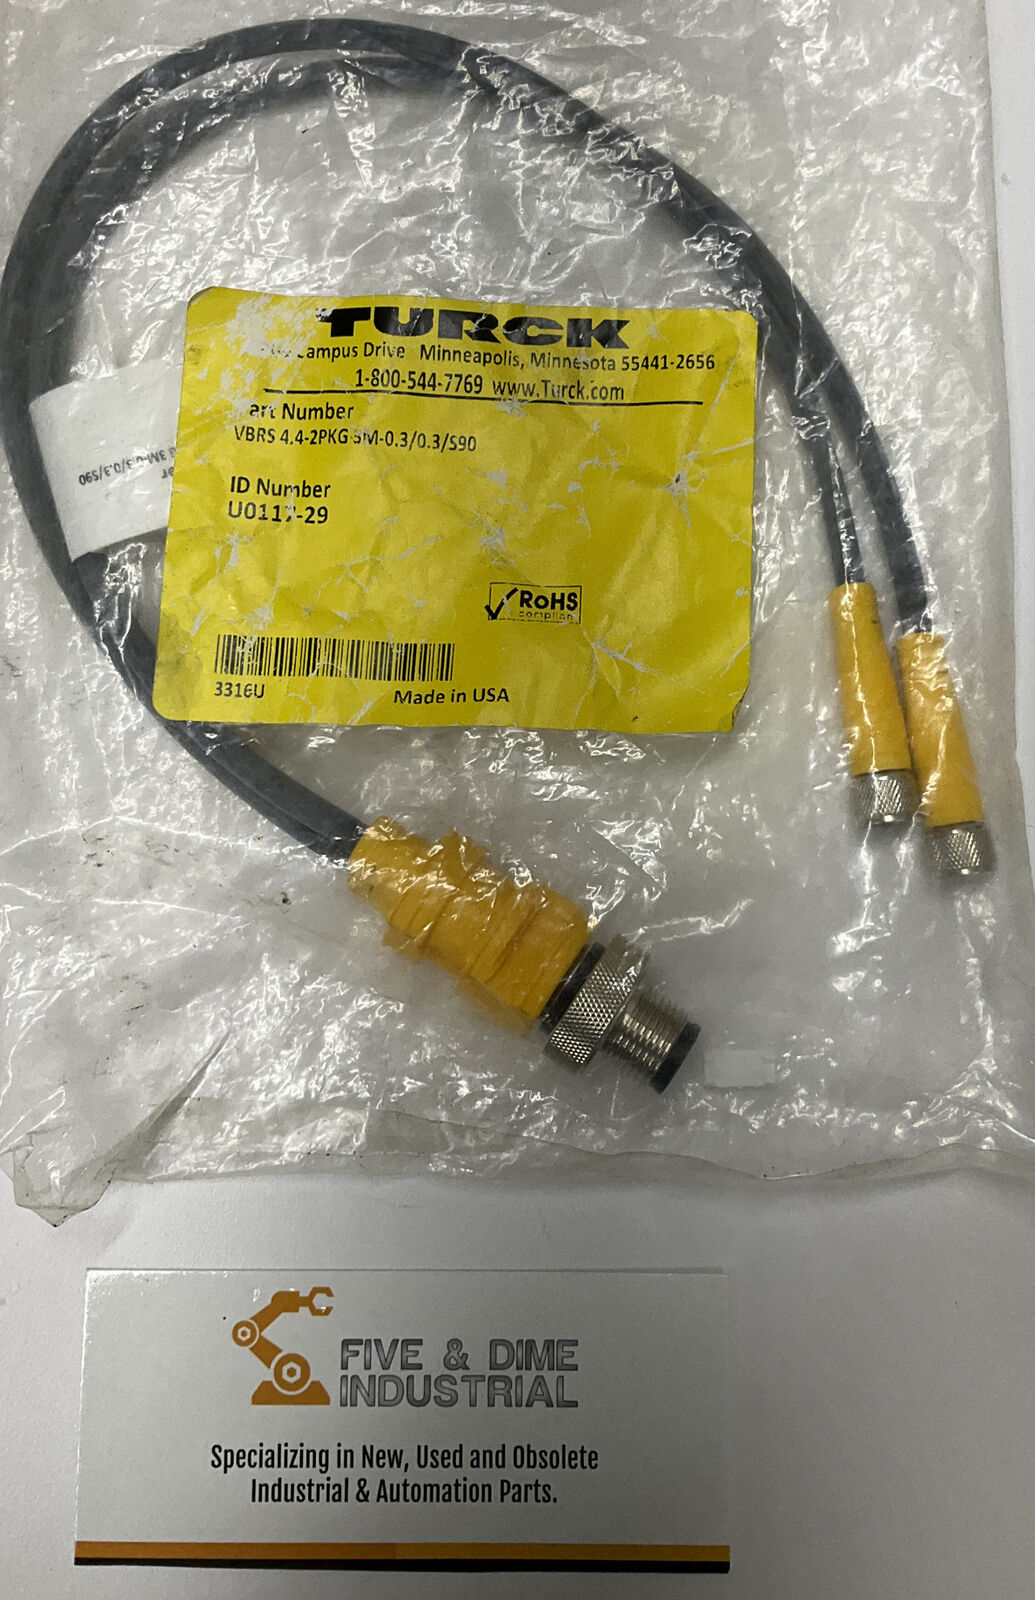 Turck VBRS 4.4-2PKG 3M-O.3/0.3/590 UO117-29 Acuator-Sensor Splitter (YE236)